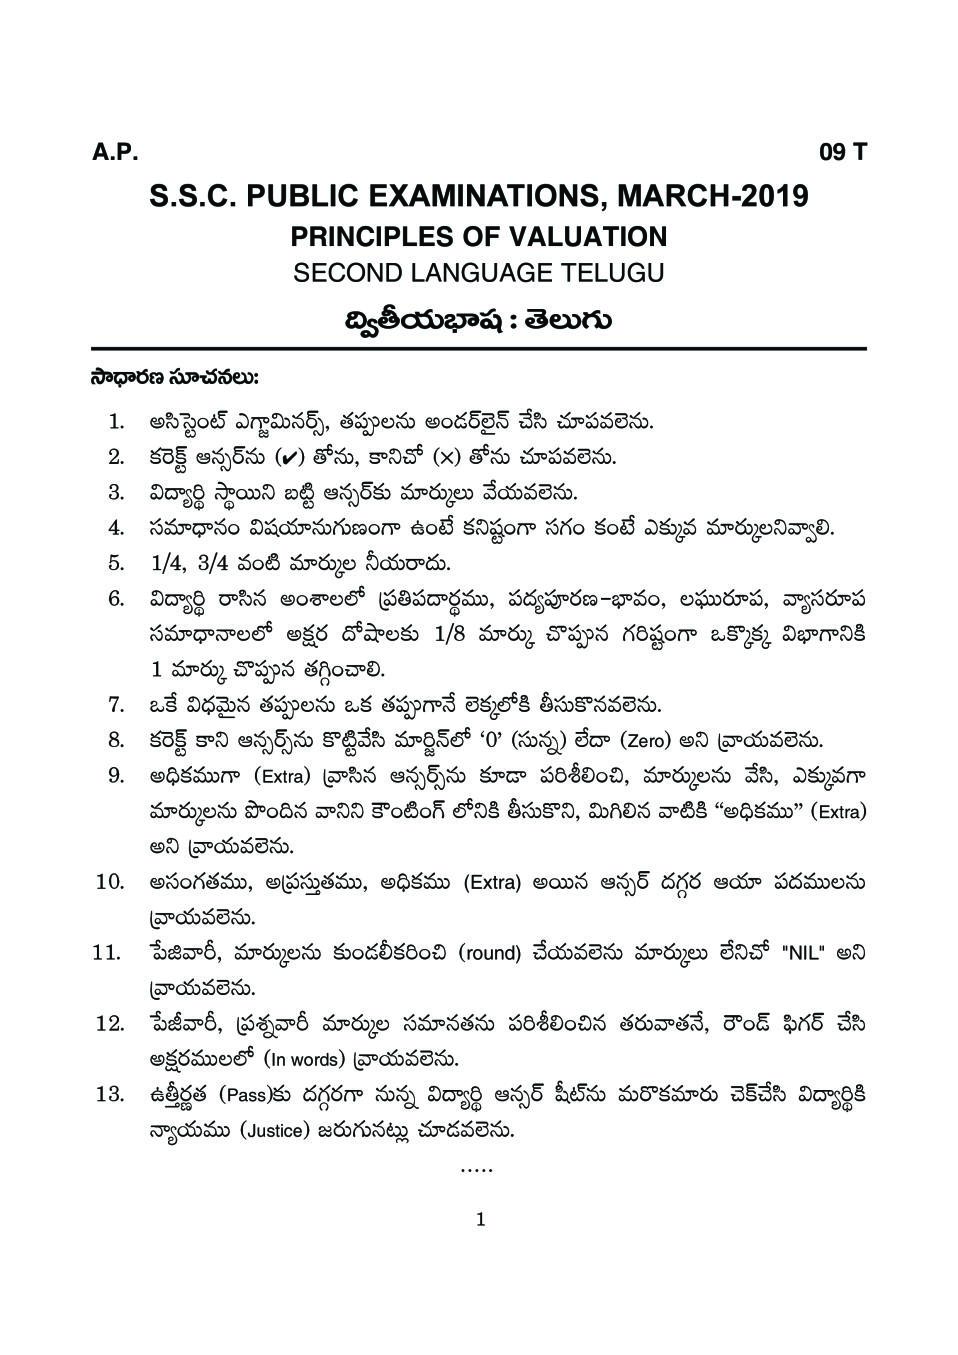 AP 10th Class Marking Scheme 2019 Telugu (2nd Language) - Page 1